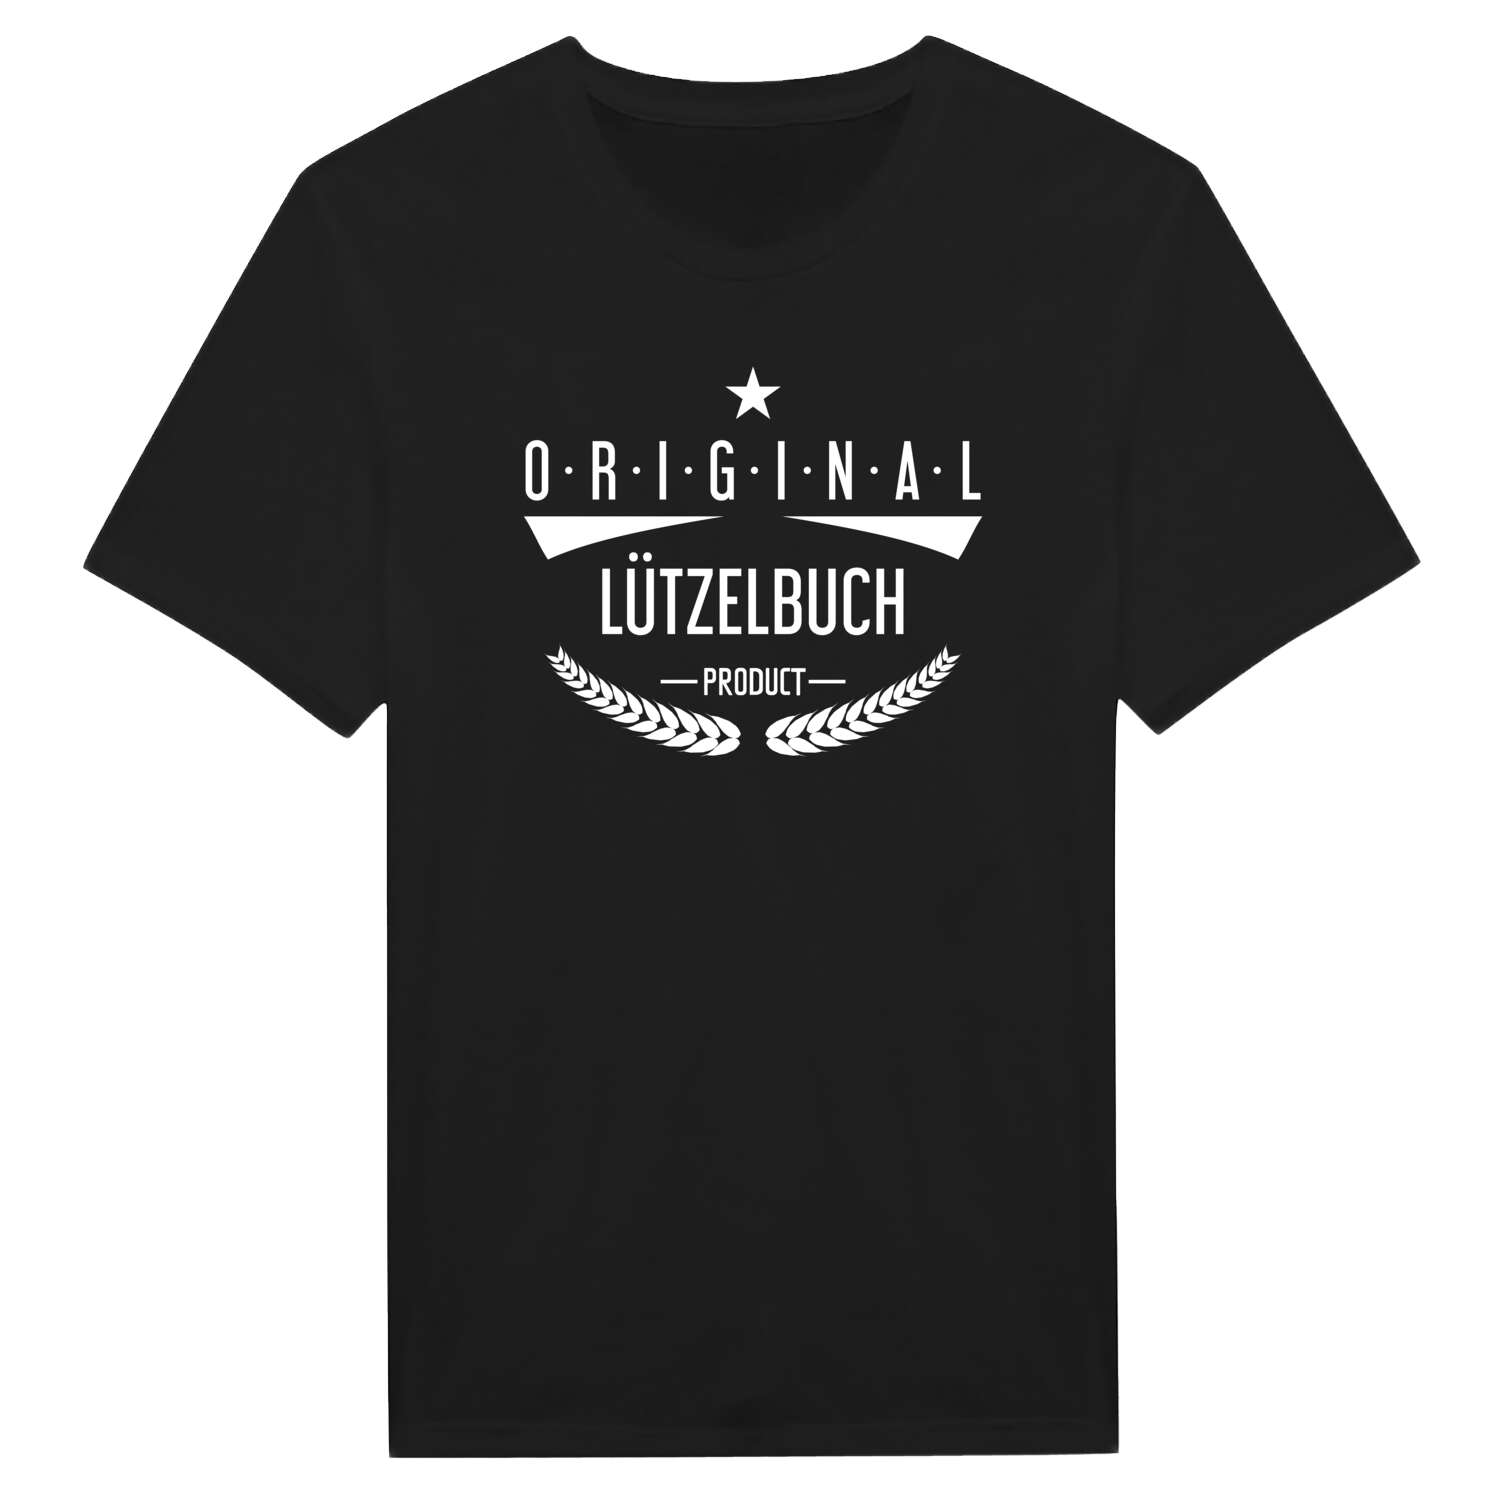 Lützelbuch T-Shirt »Original Product«